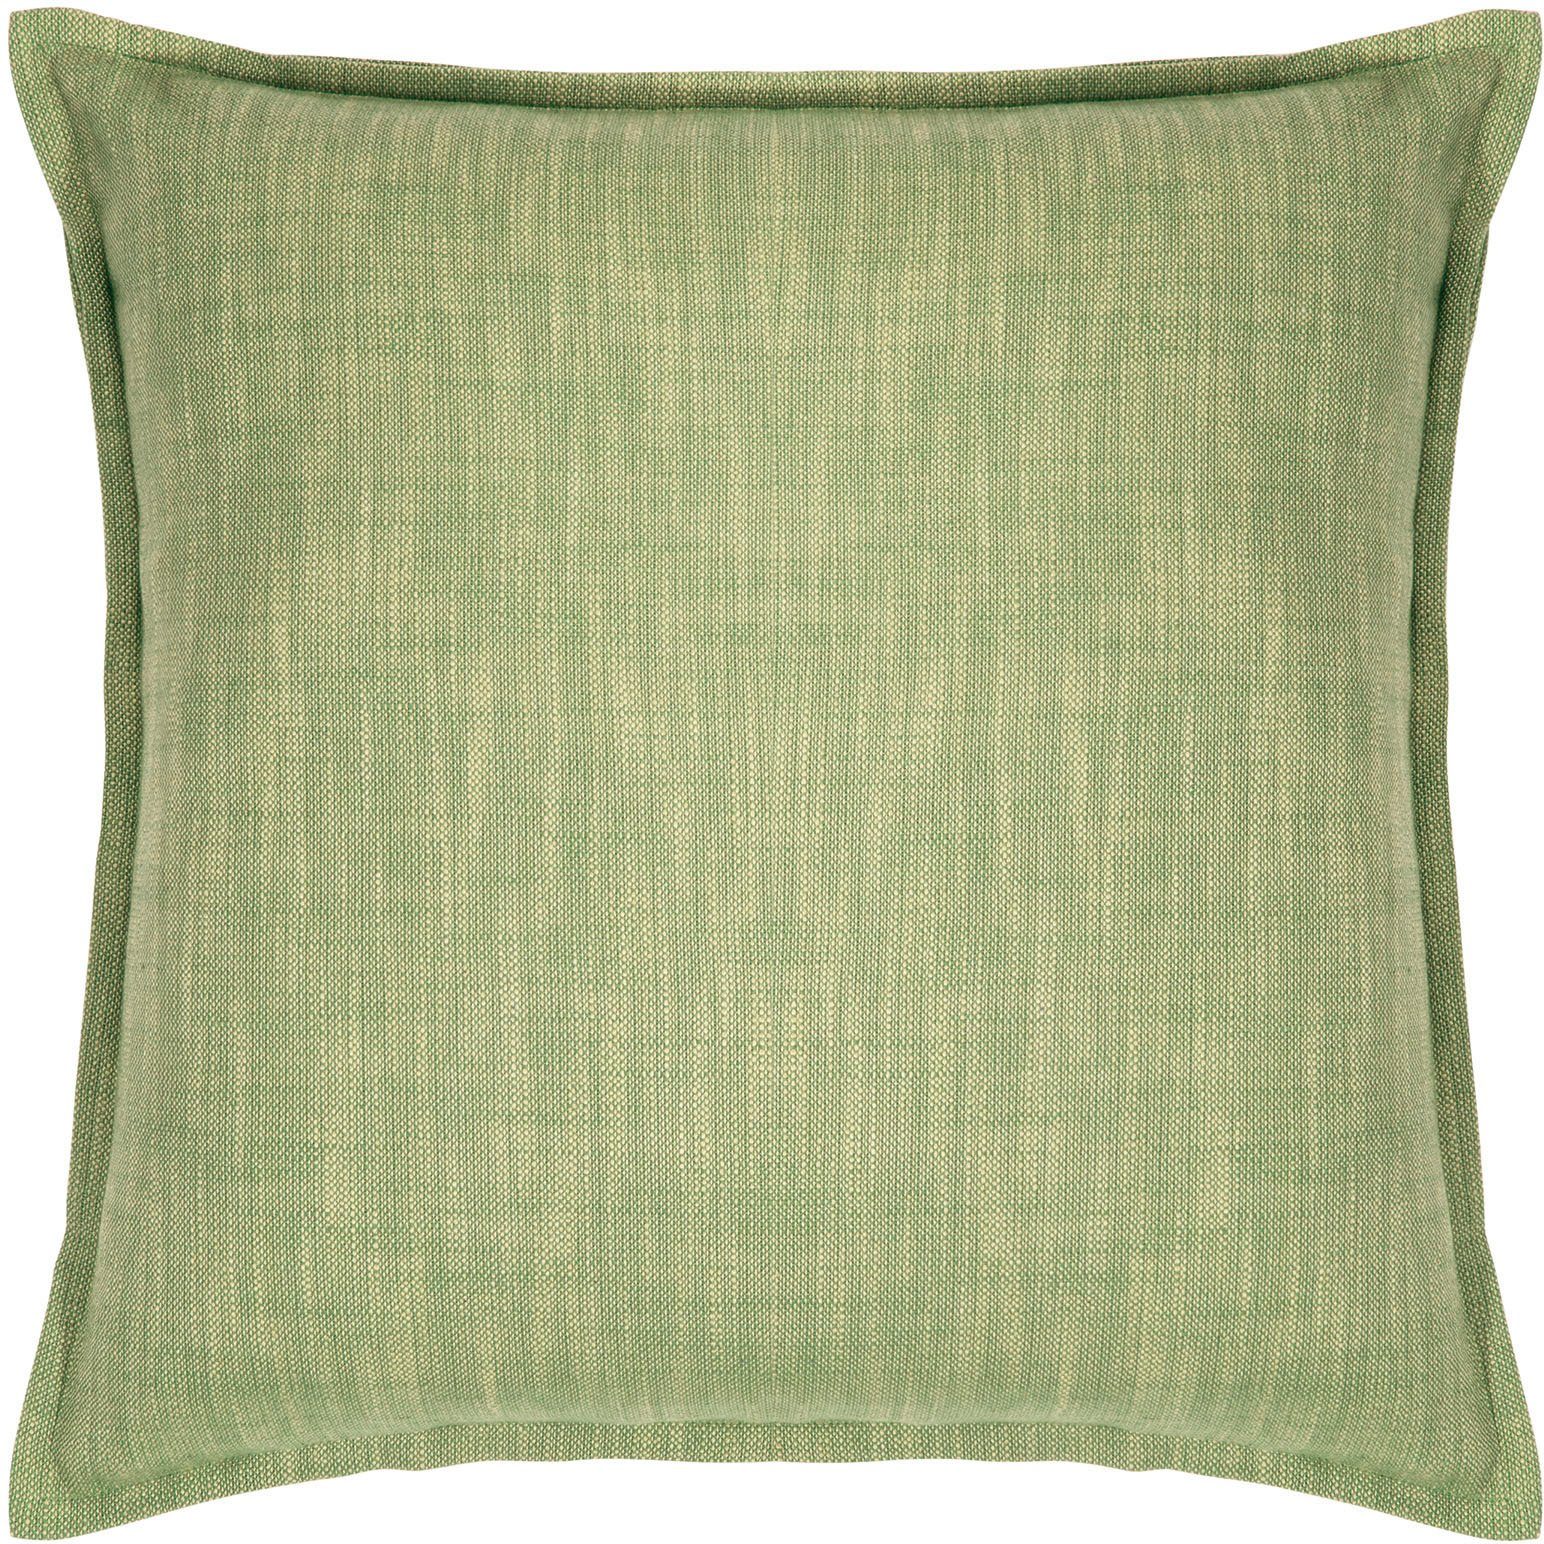 PAD Dekokissen Reflex, einzigartiges Design, Kissenhülle ohne Füllung, 1 Stück green